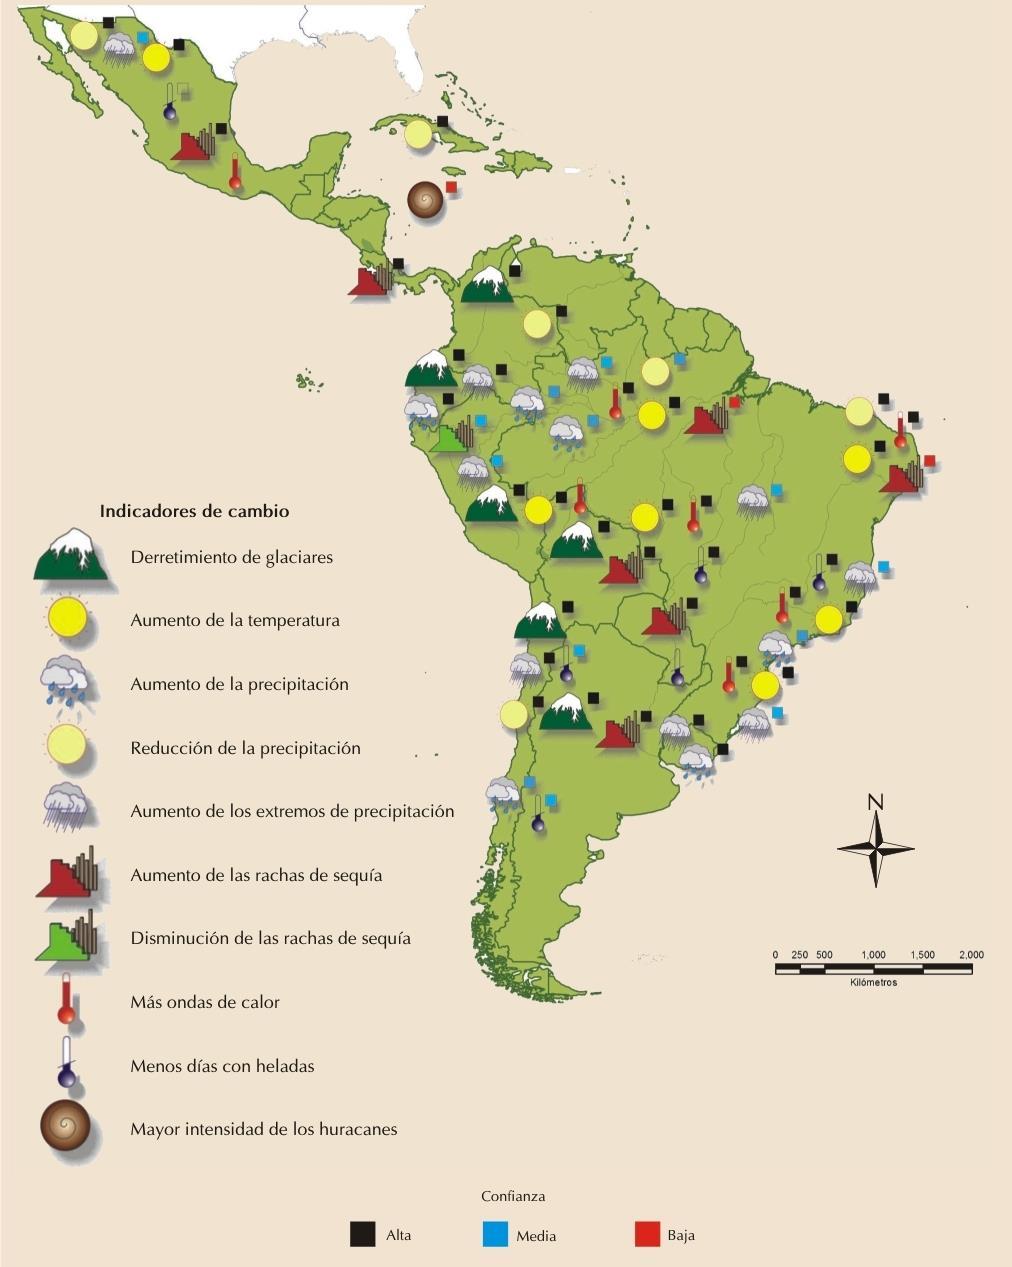 El Cambio Climático y Latino América El Cambio Climático está siendo relacionado con fenómenos que se vienen presentando a lo largo y ancho de la región: Retroceso de los glaciares en la cordillera